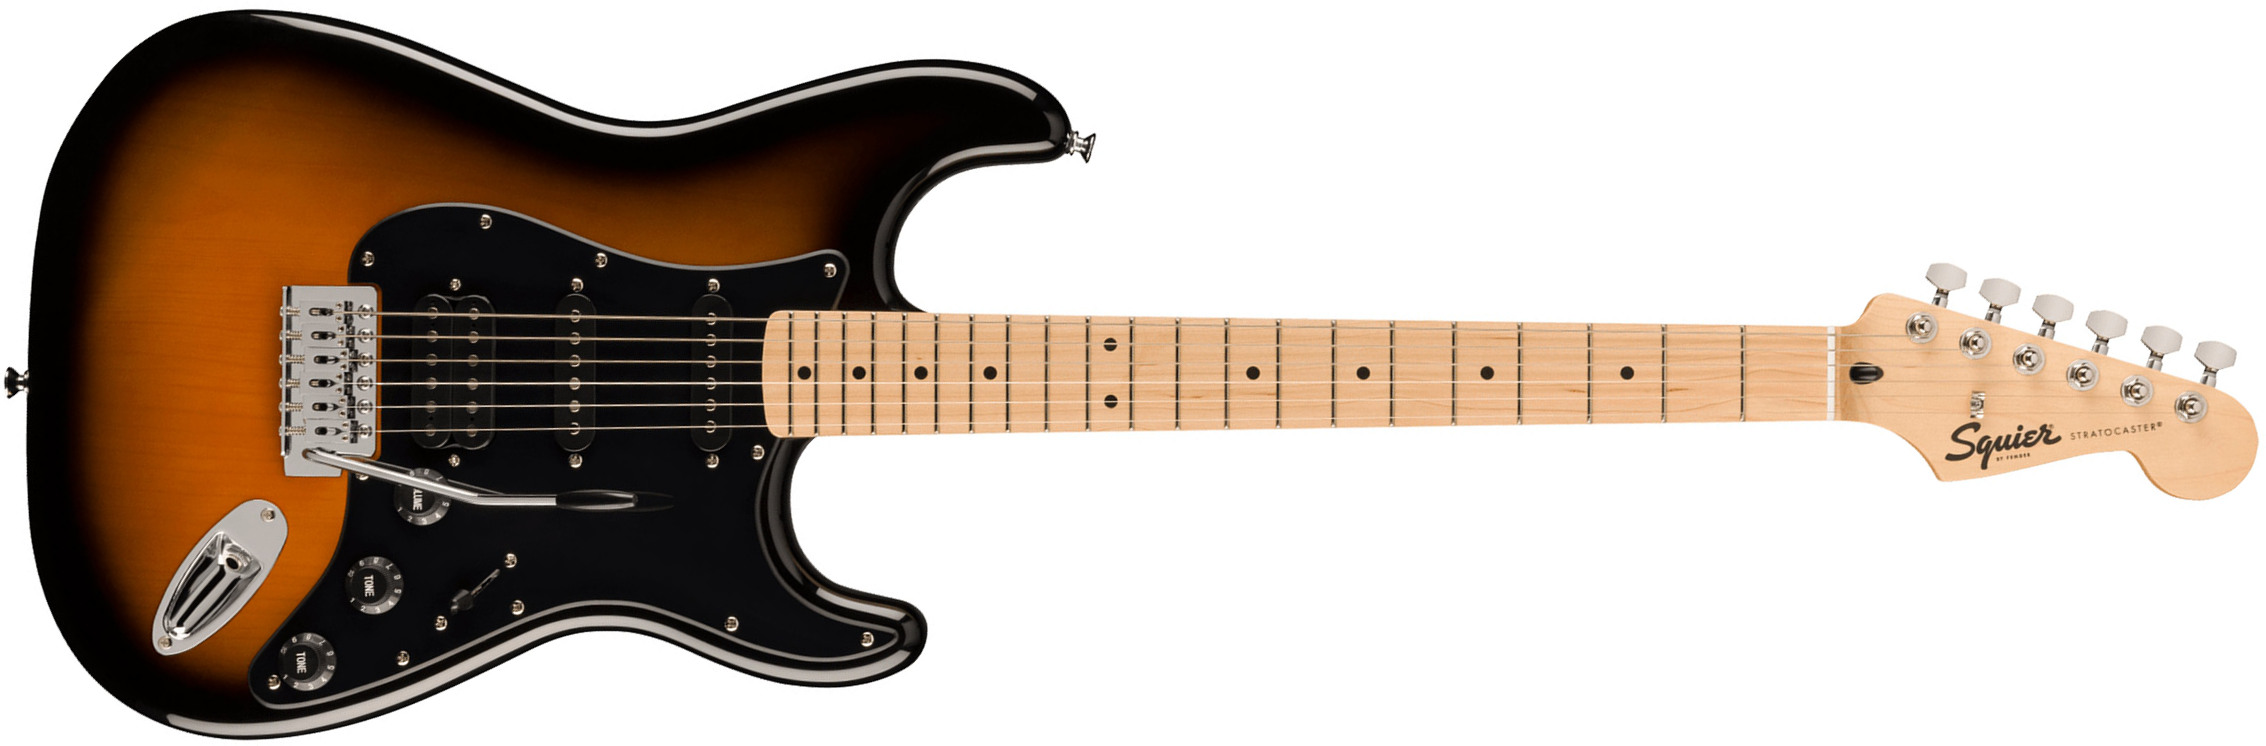 Squier Strat Sonic Hss Trem Mn - 2-color Sunburst - Str shape electric guitar - Main picture